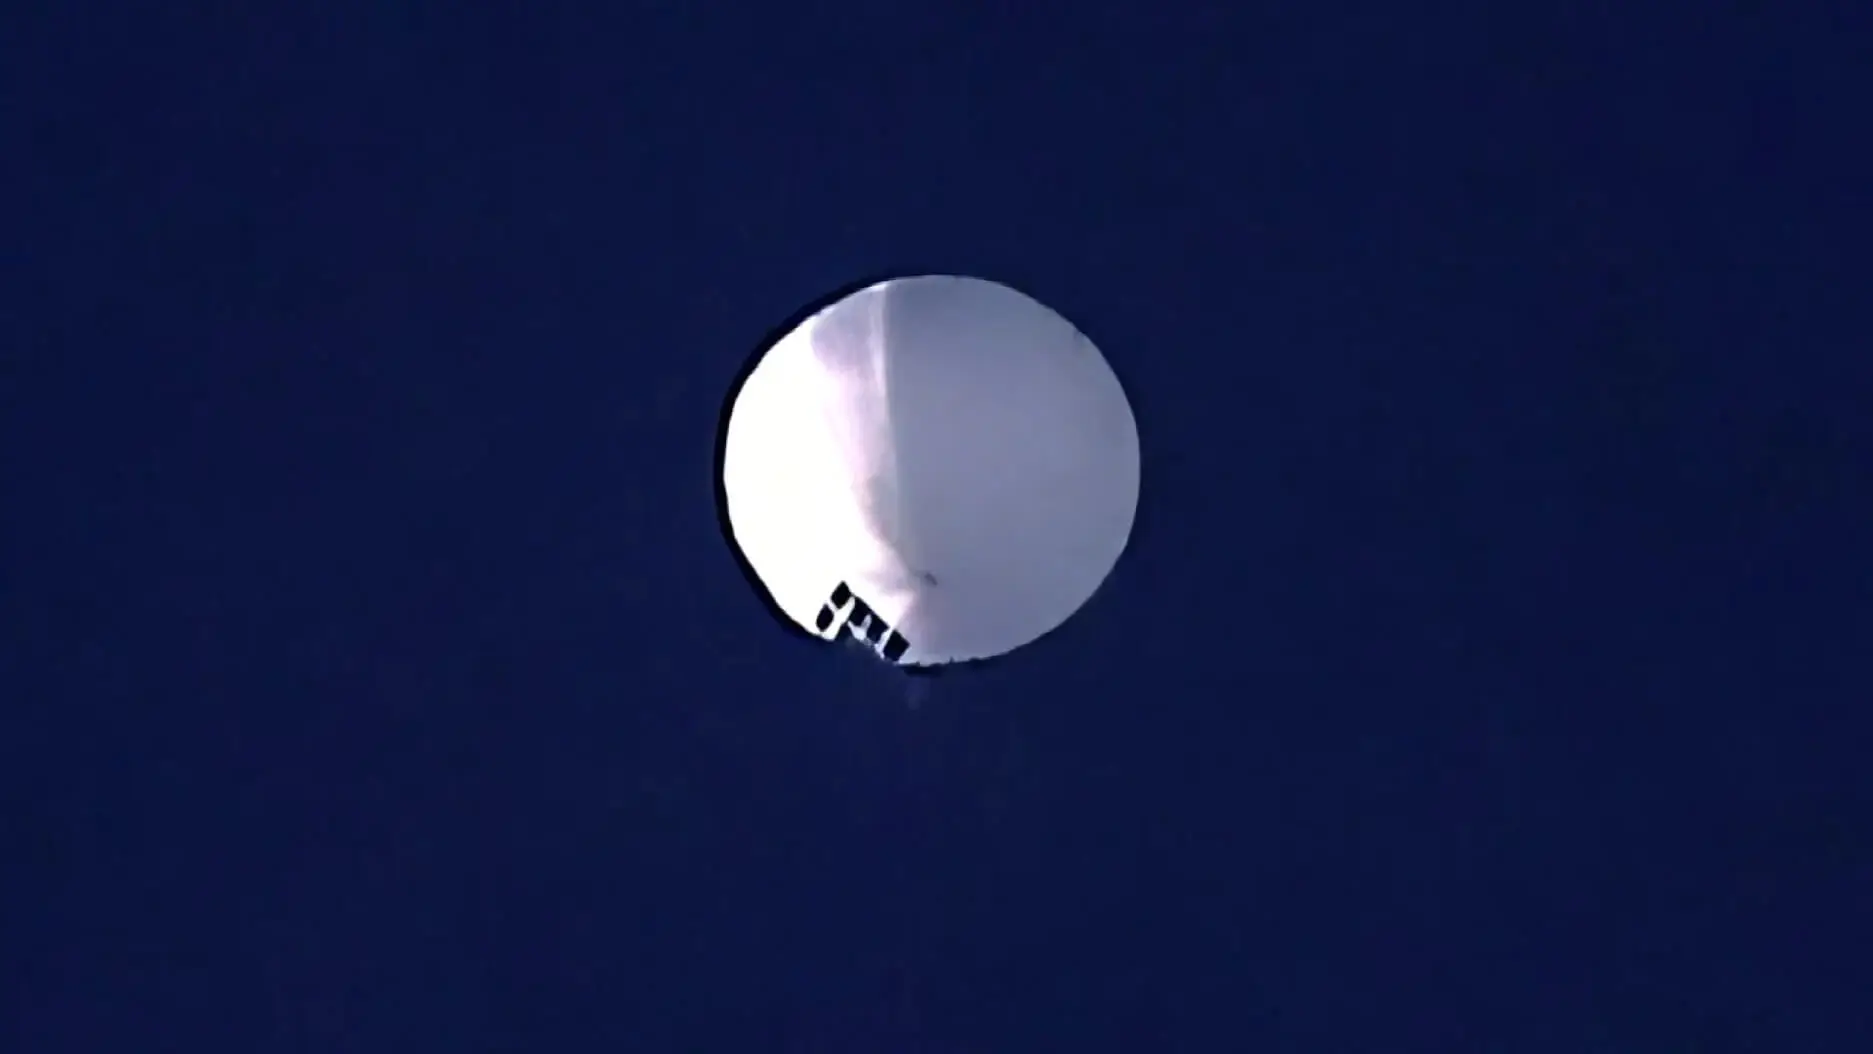 Chińczycy latają balonem szpiegowskim nad USA. Czego szukają?